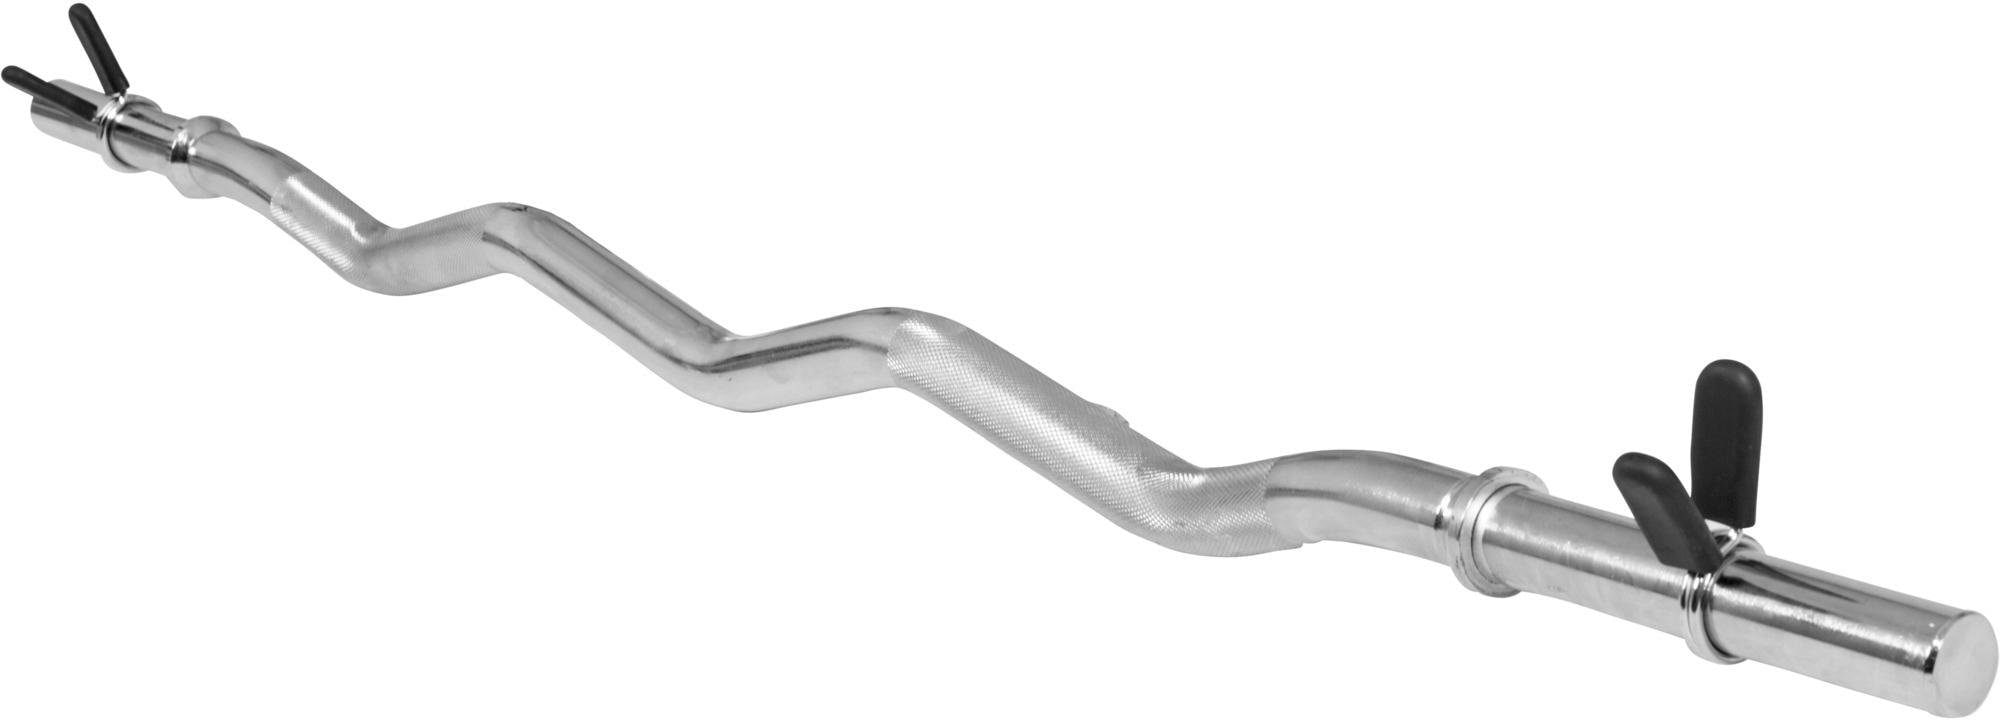 GORILLA SPORTS Curlstange »SZ Curlstange in Chrom 120 cm Federverschluss«, Chrom-Stahl, 120 cm, (3 tlg.)